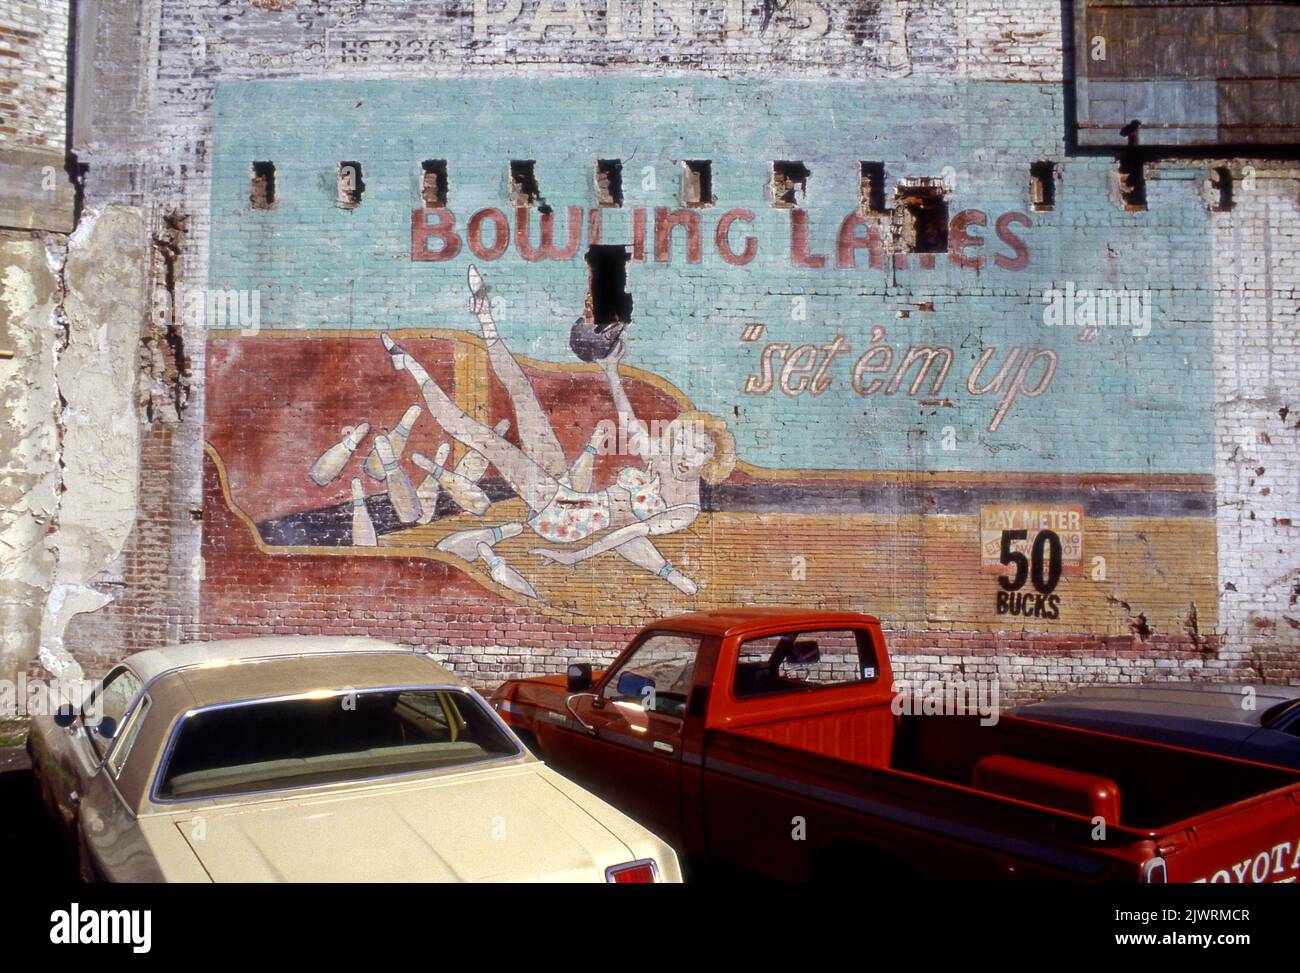 Mural artístico que representa una escena de bolos retro en el centro de Los Angeles, CA,1989 Foto de stock